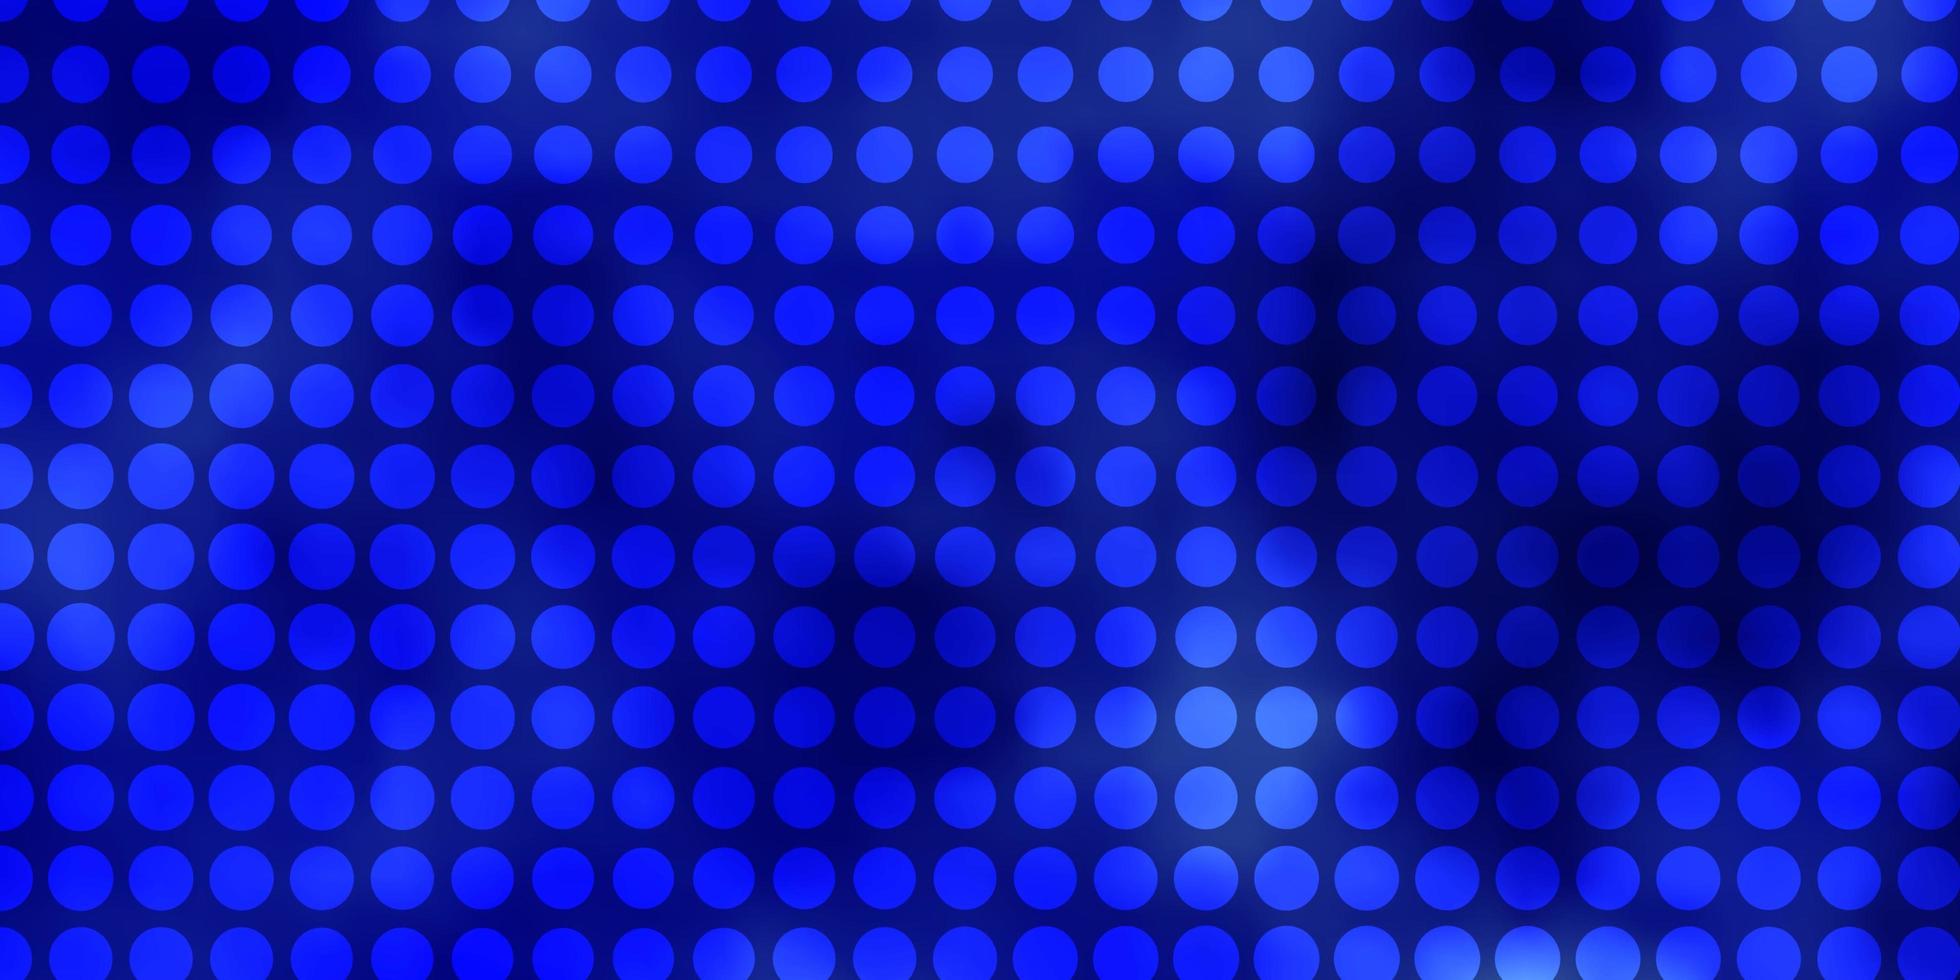 hellblauer Vektorhintergrund mit Kreisen. vektor